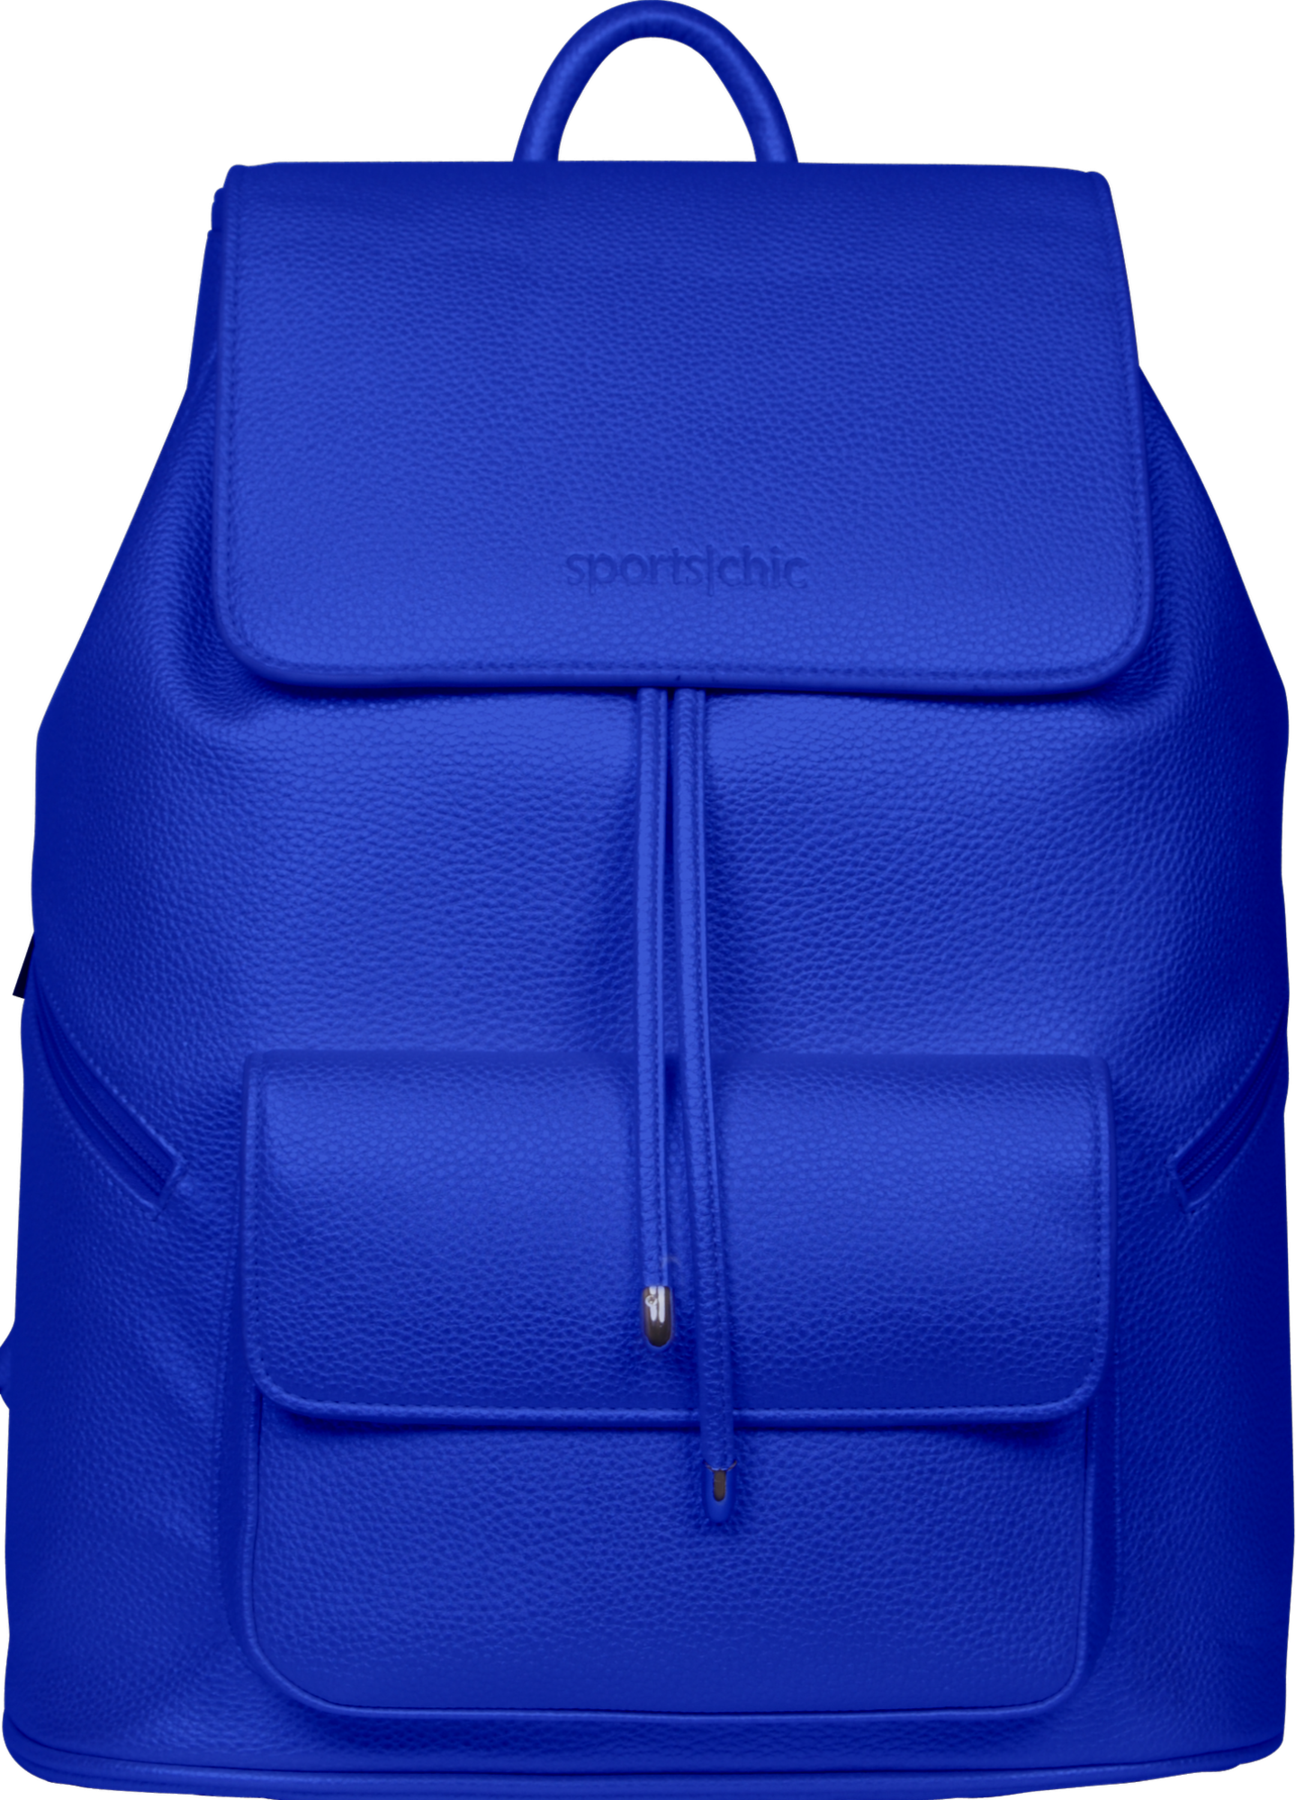 Front Blue Handbag Download HD PNG Image